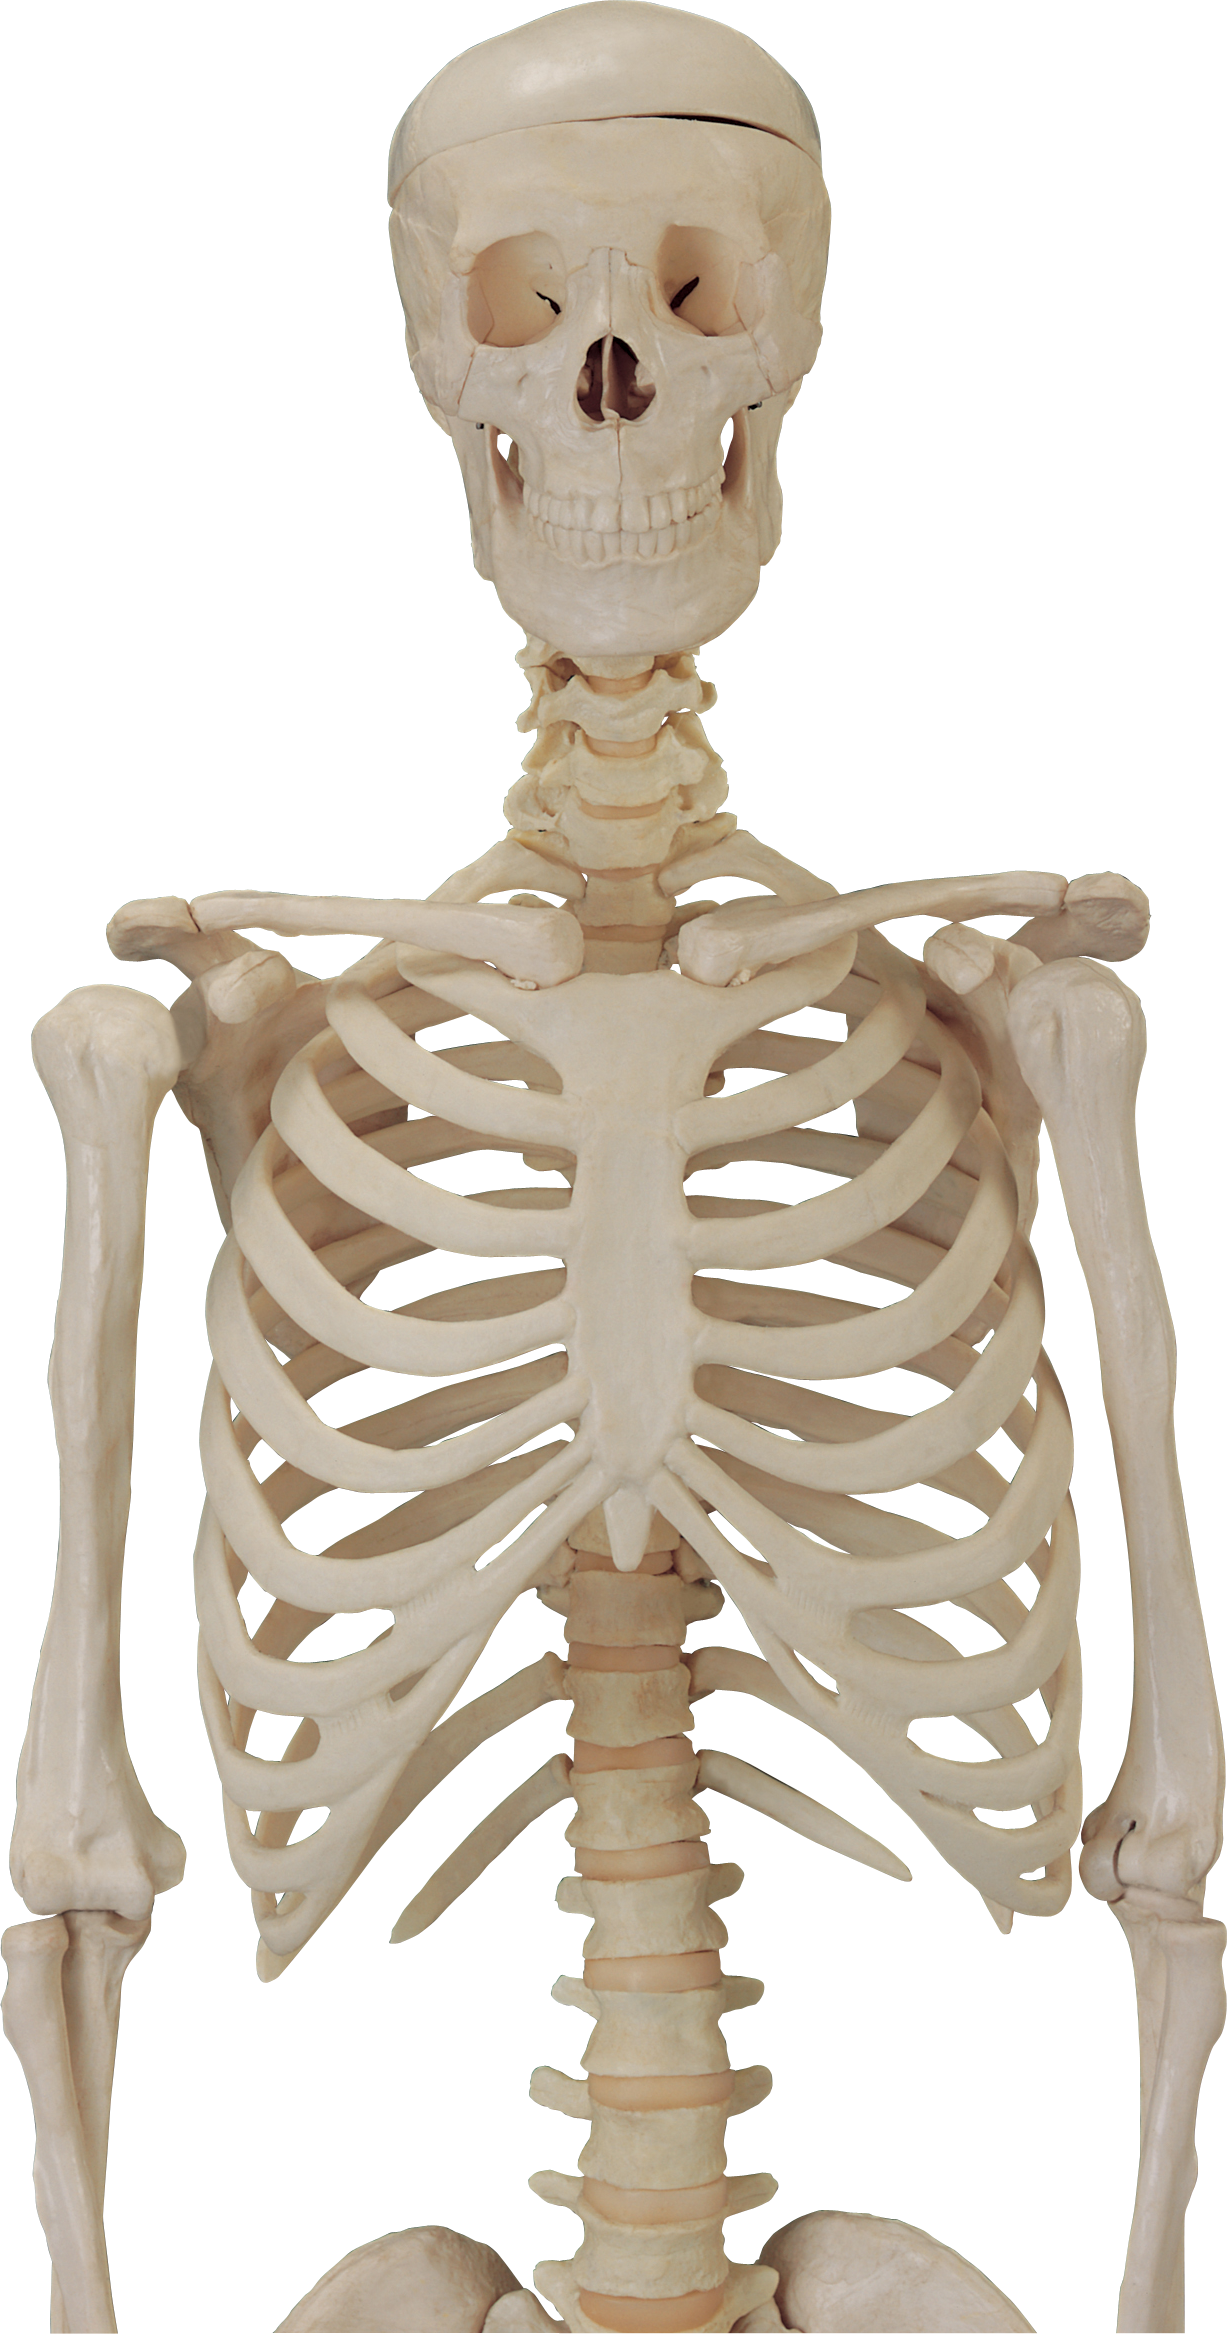 Assembling A Skeleton Guide